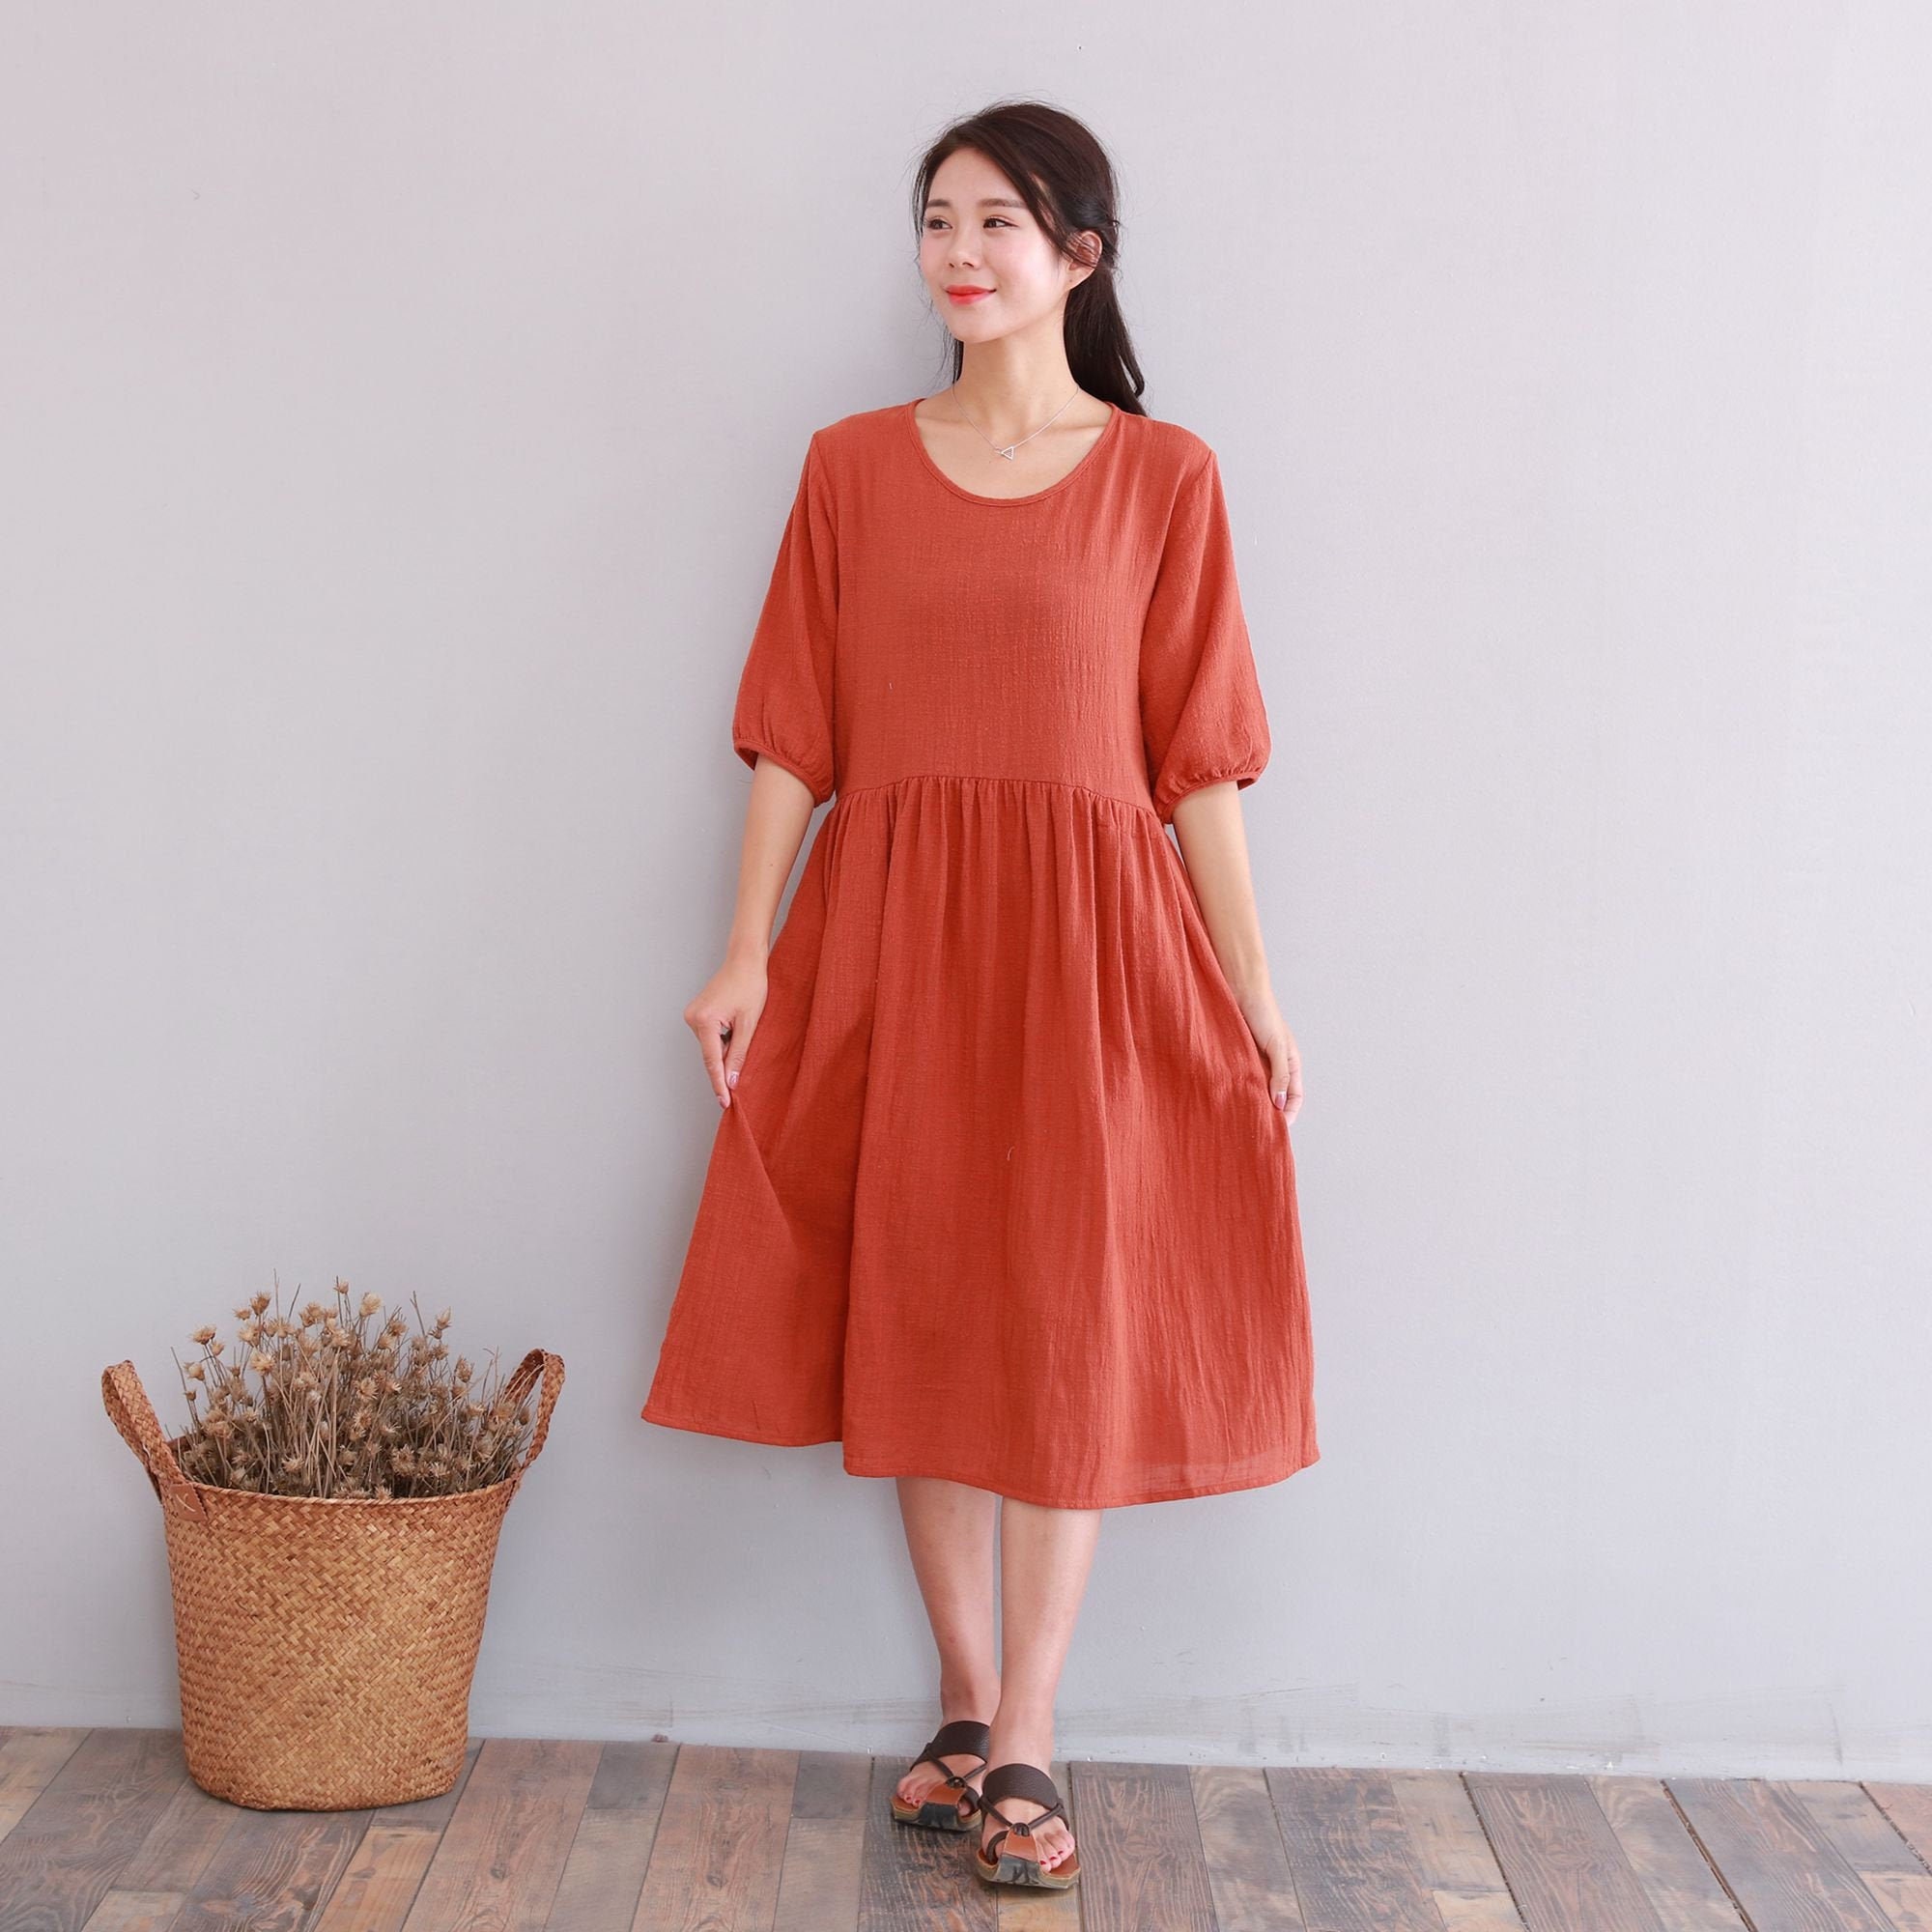 Clearance Dress Final Sale Soft Cotton Dress Summer Short | Etsy